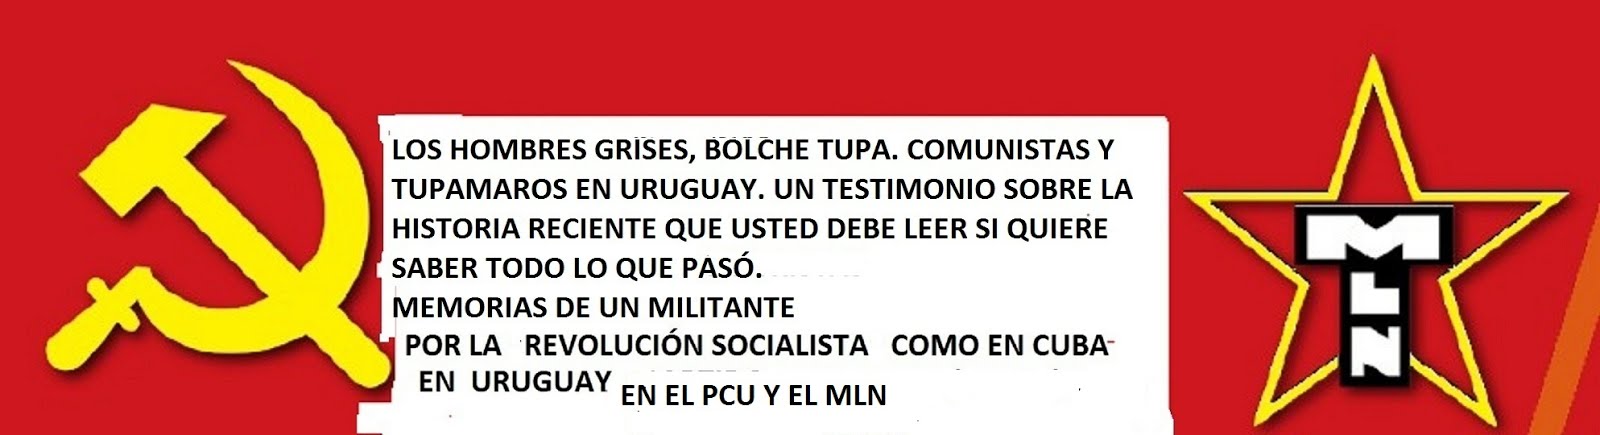 LOS HOMBRES GRISES (BOLCHE TUPA )  : COMUNISTAS Y TUPAMAROS EN URUGUAY